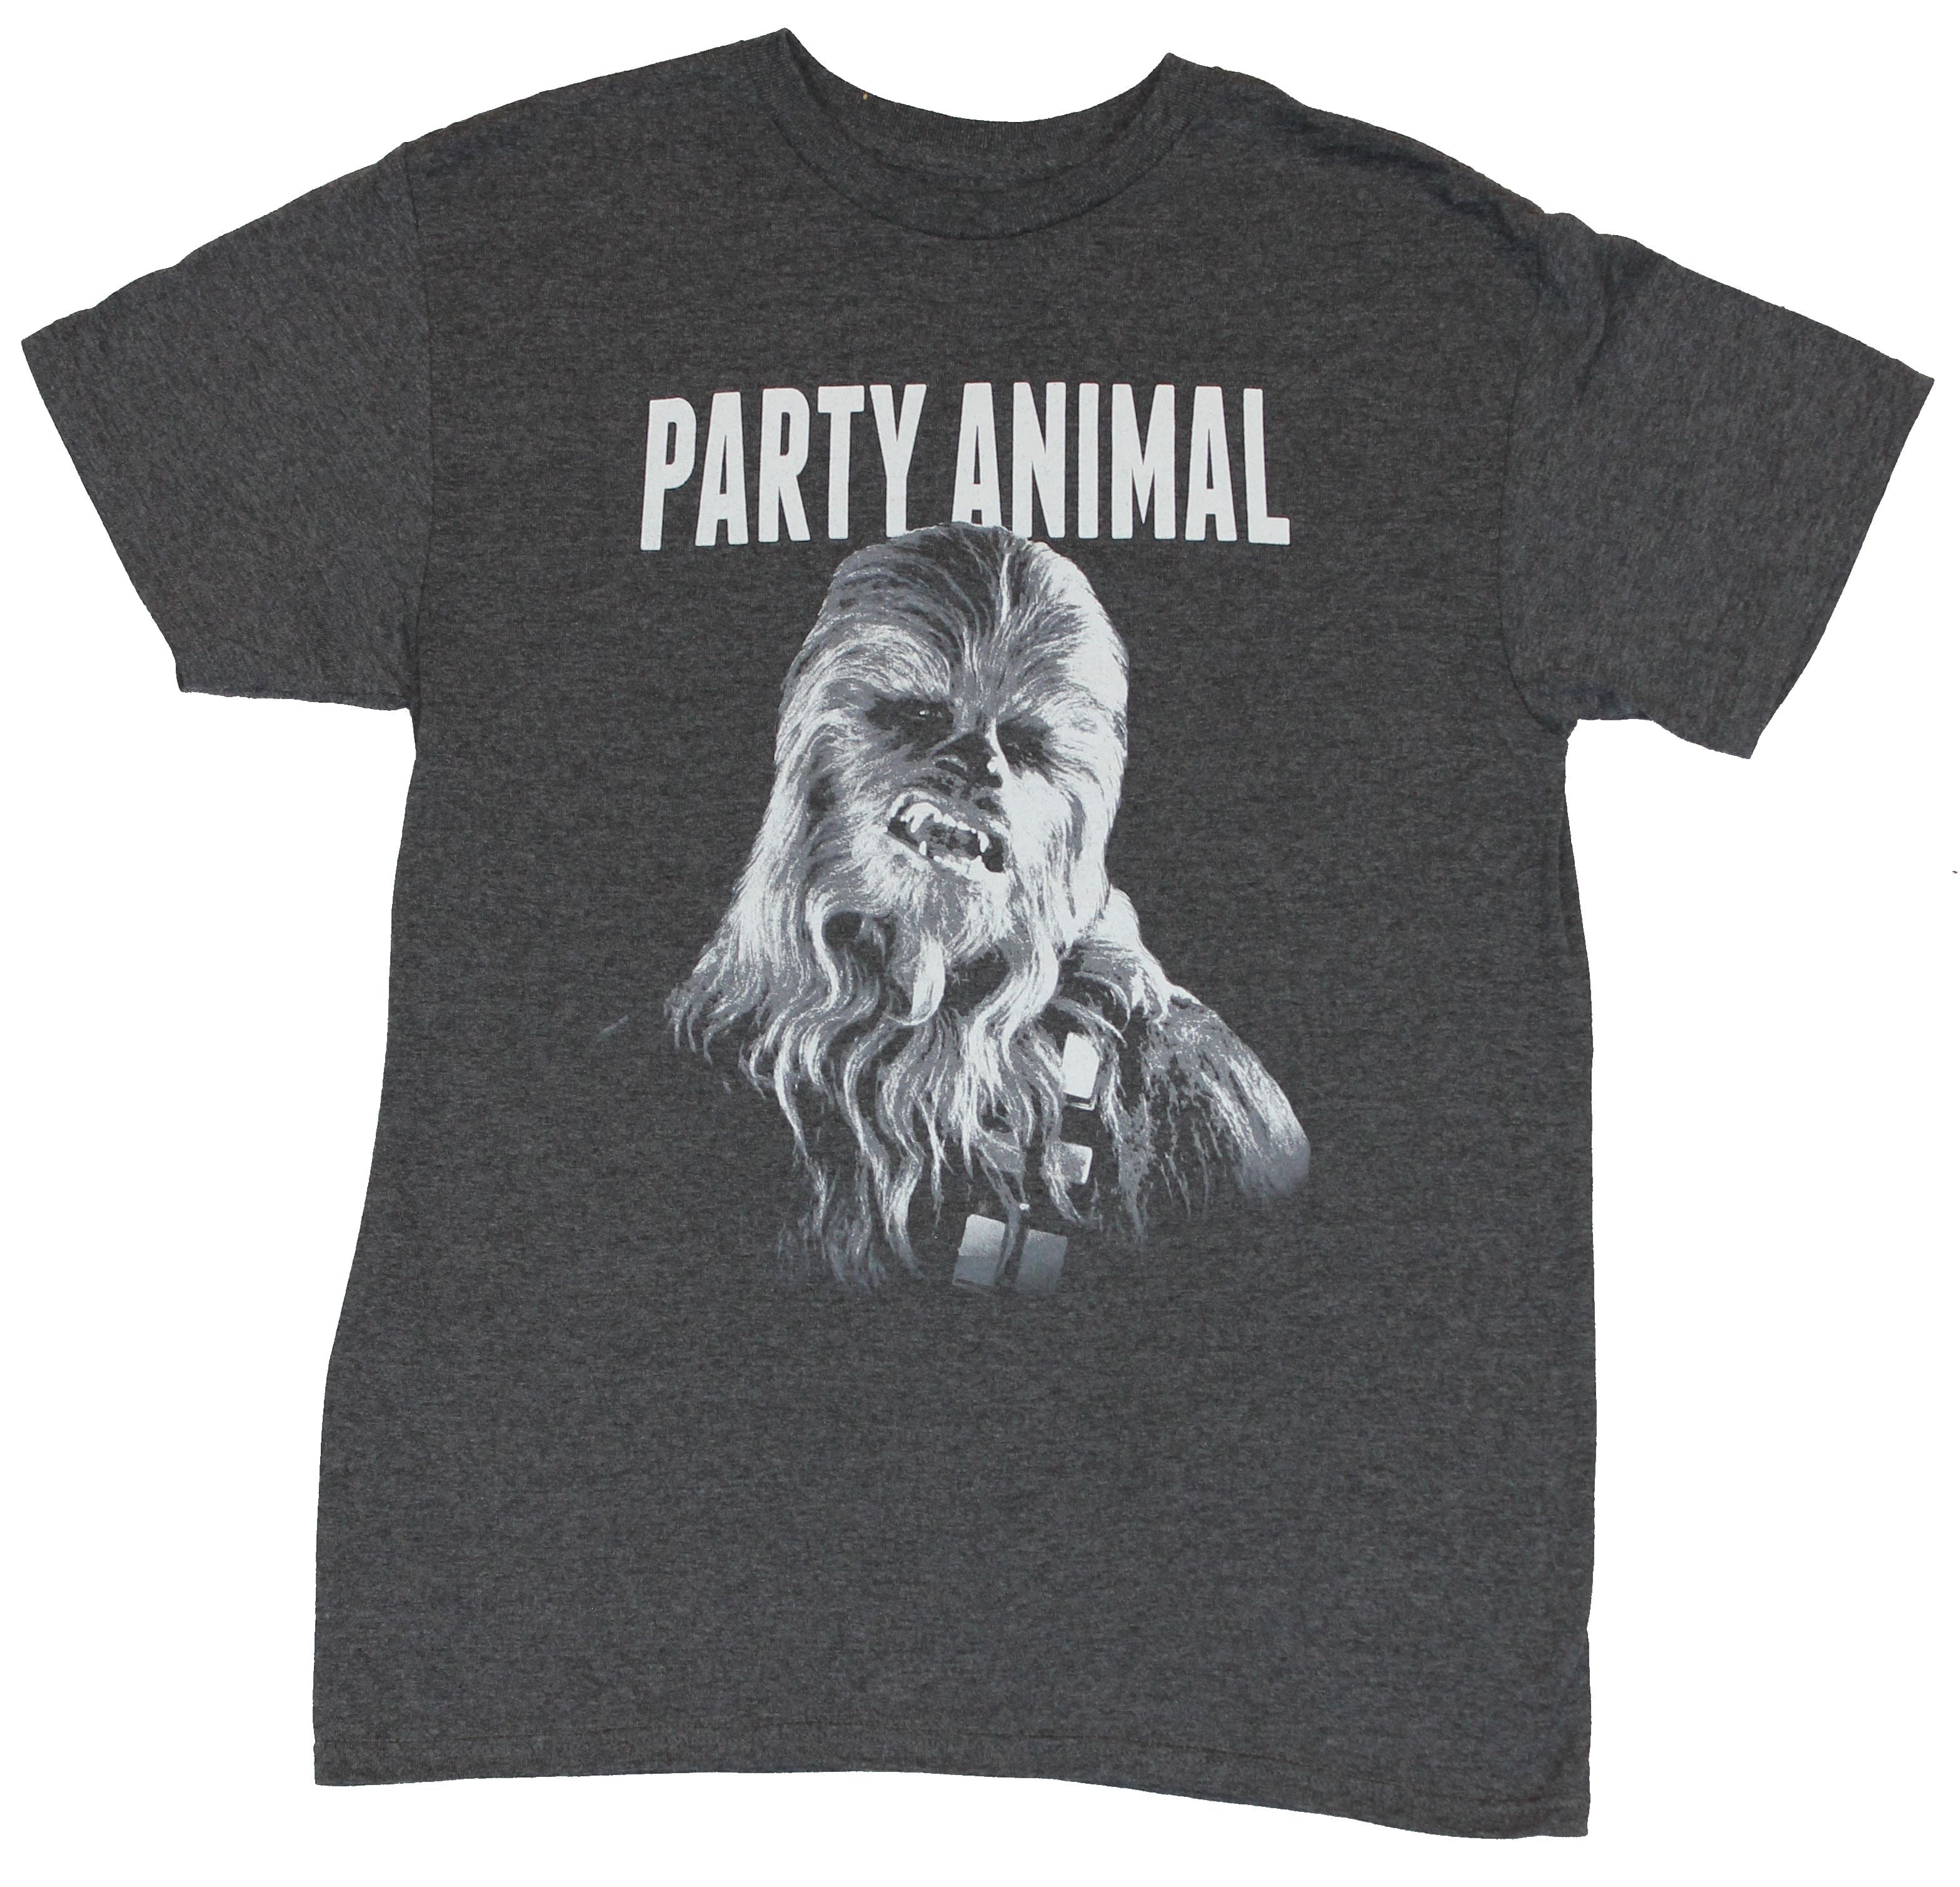 Black Star Wars Men's Animals Chewie Short Sleeve T-Shirt Medium 